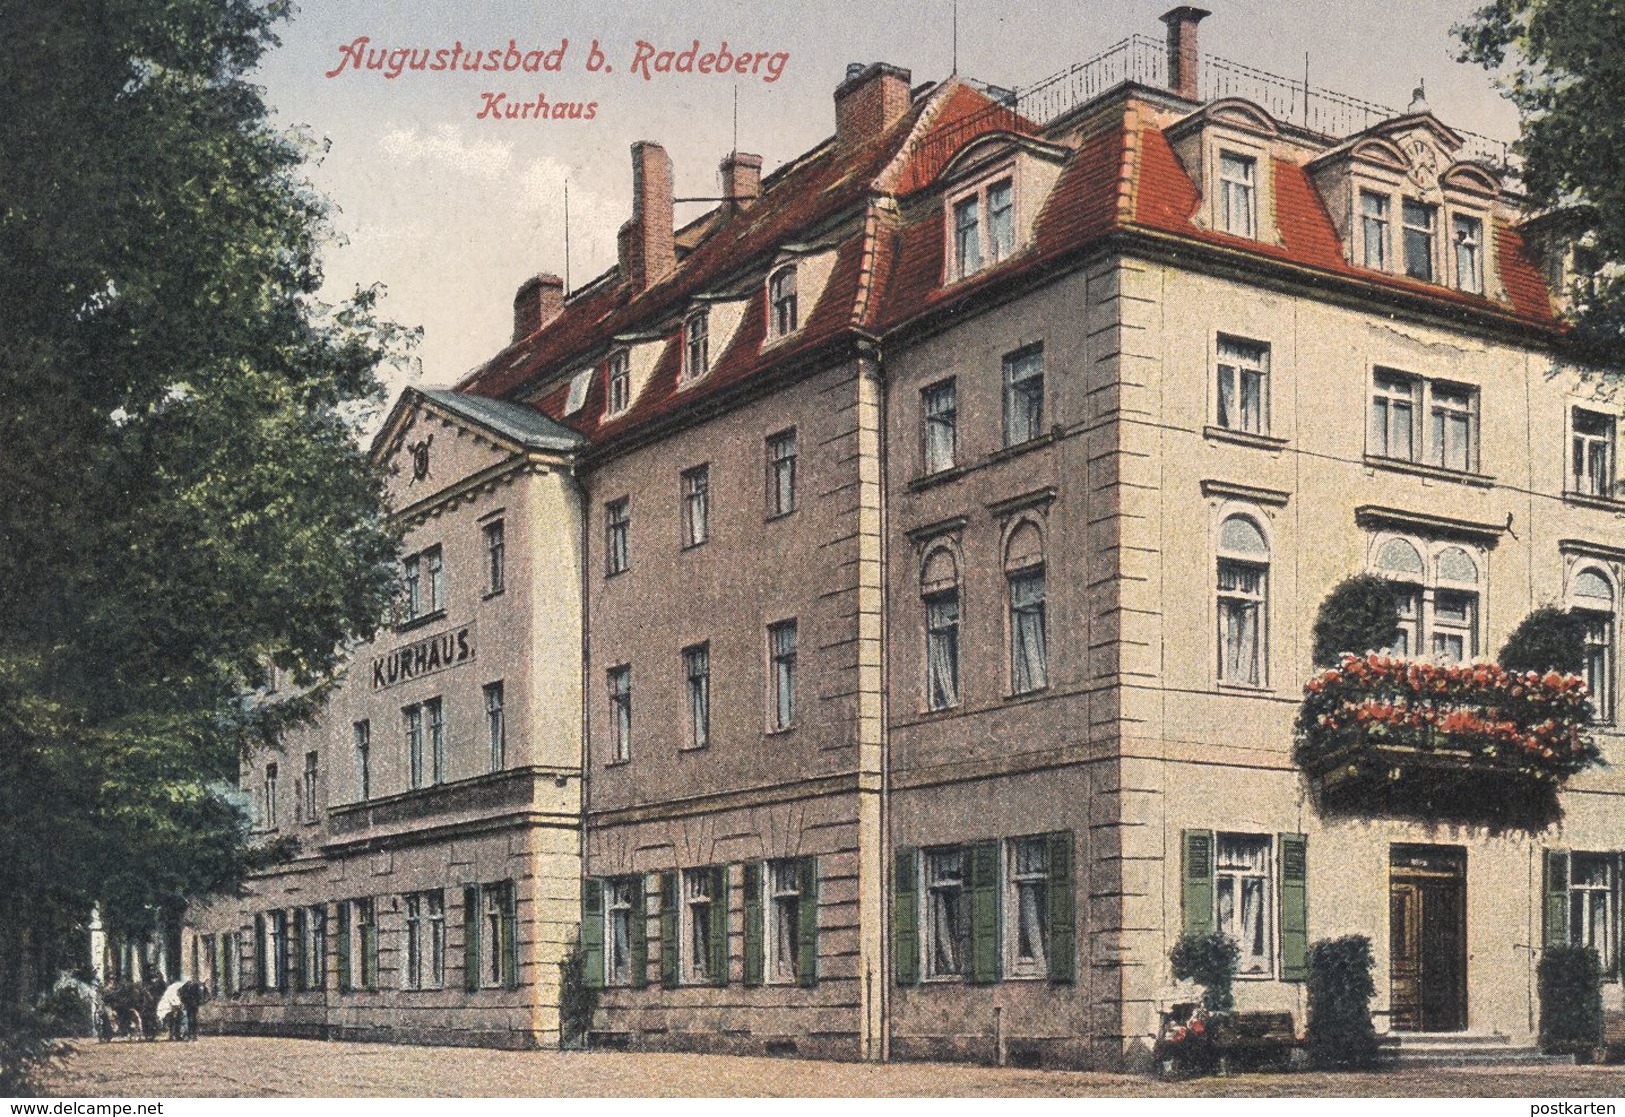 ALTE POSTKARTE AUGUSTUSBAD BEI RADEBERG KURHAUS Pferdefuhrwerk Liegau Kreis Bautzen Ansichtskarte AK Cpa Postcard - Radeberg